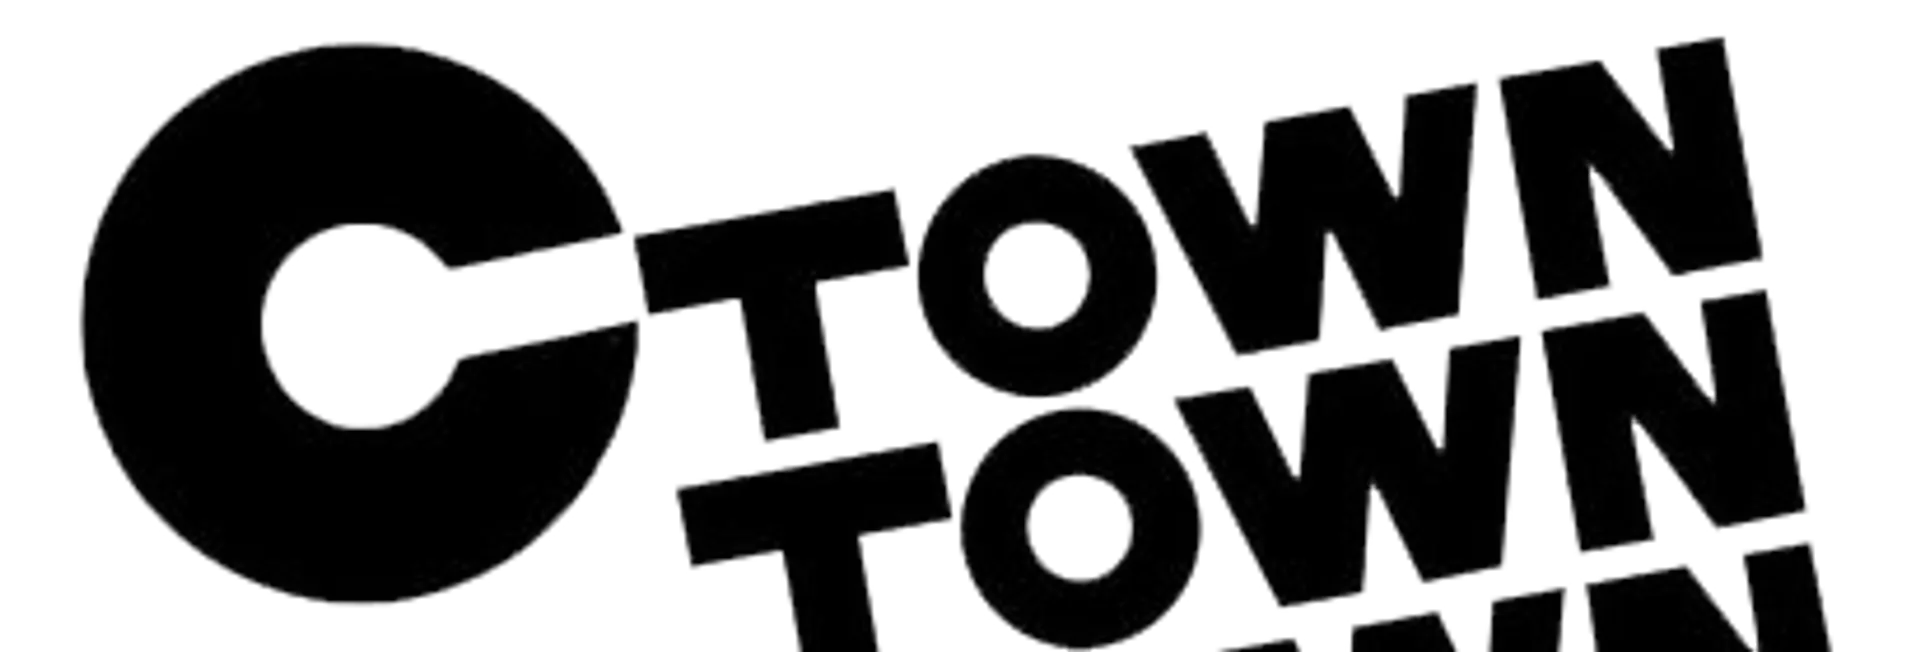 C-TOWN logo